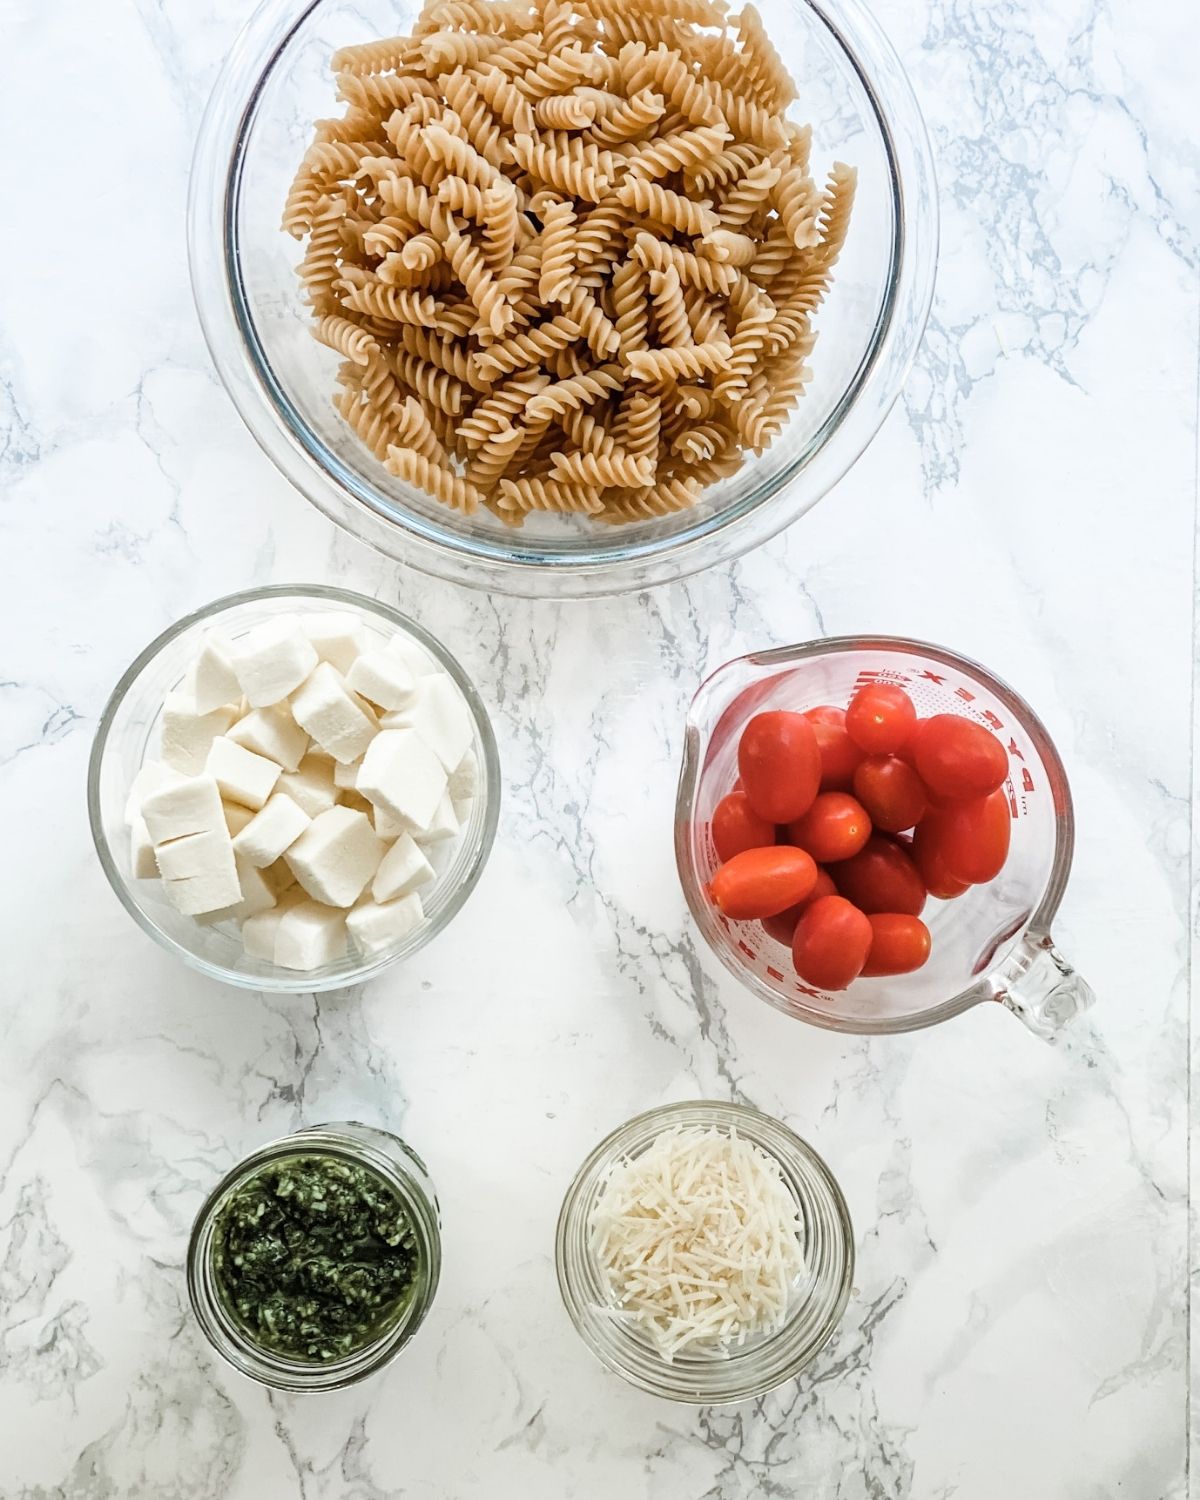 ingredients to make pesto pasta salad